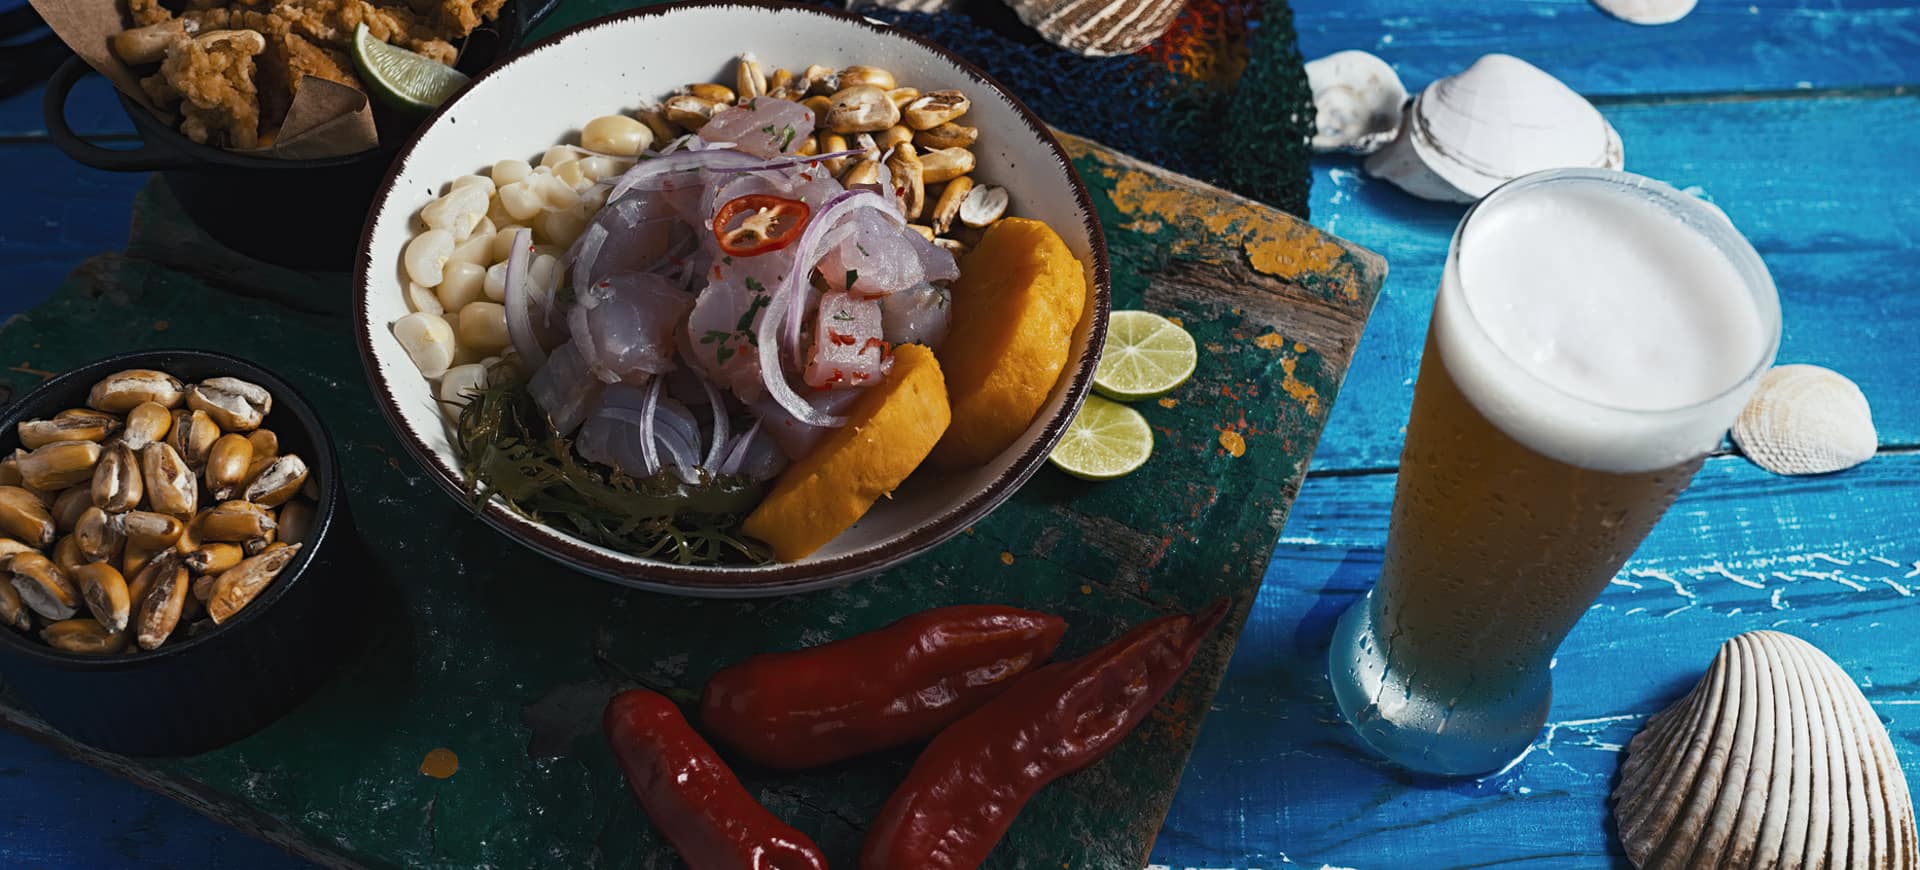 Por qué la comida peruana es la mejor - Ceviche